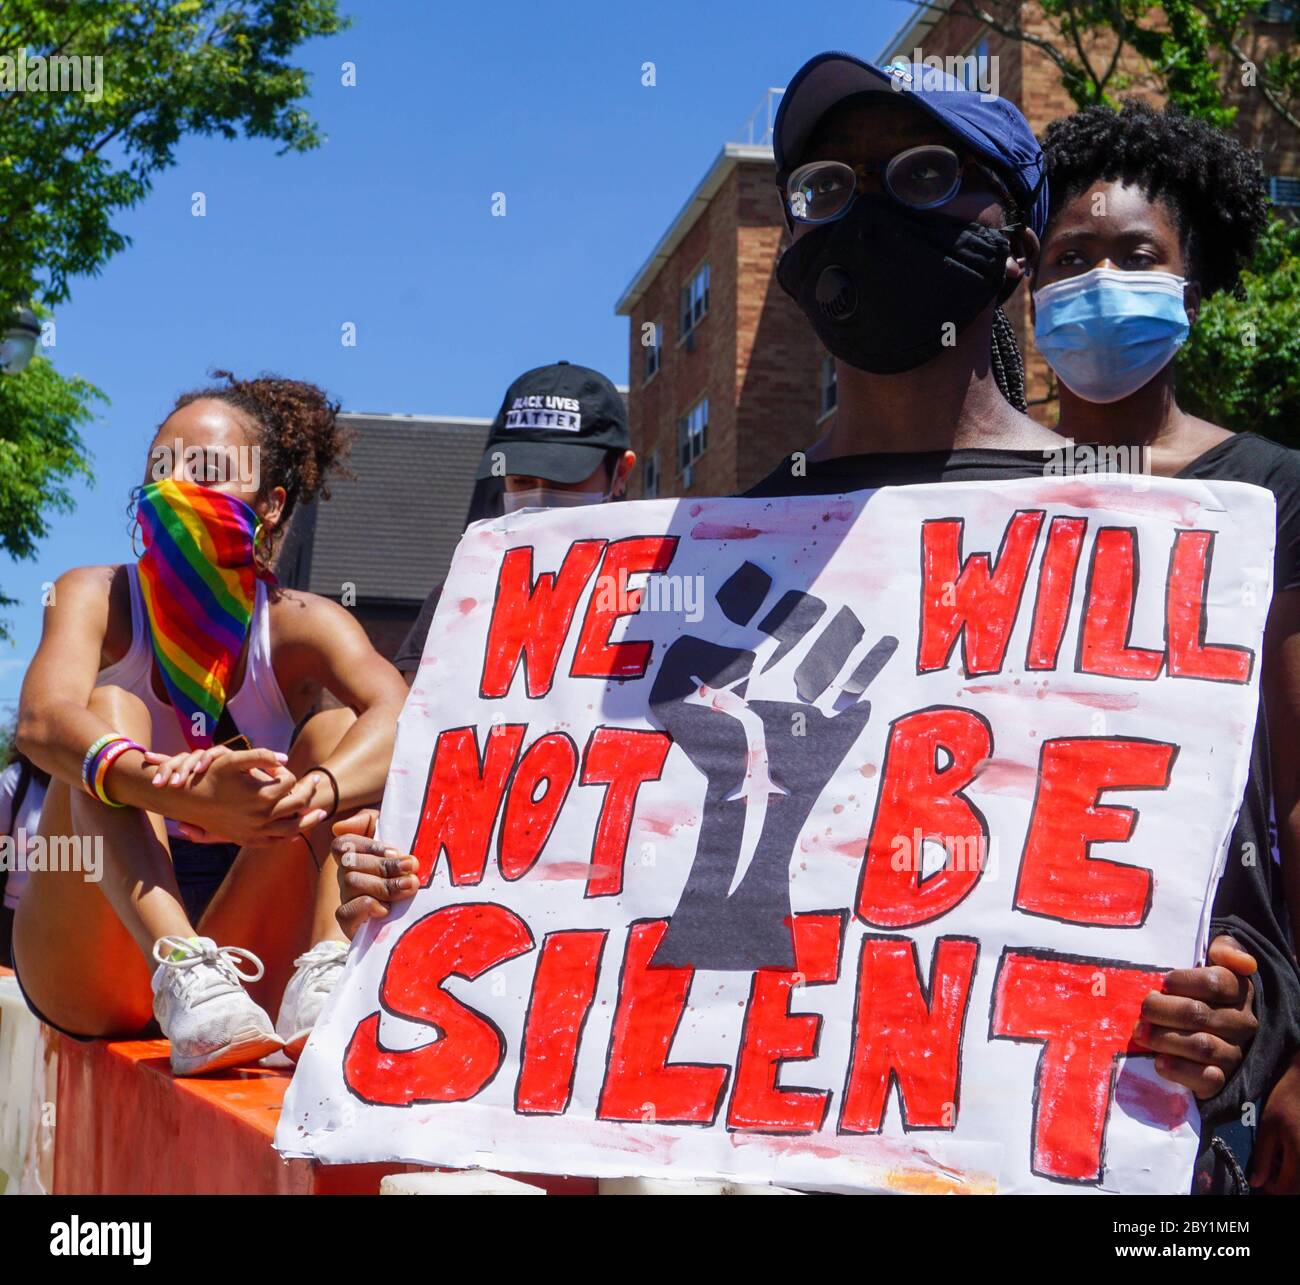 Black Lives Matter Protest - Wir werden nicht schweigsam Demonstranten George Floyd - Ridgefield Park, bezirk bergen, New Jersey usa montag, 8. juni 2020 Stockfoto